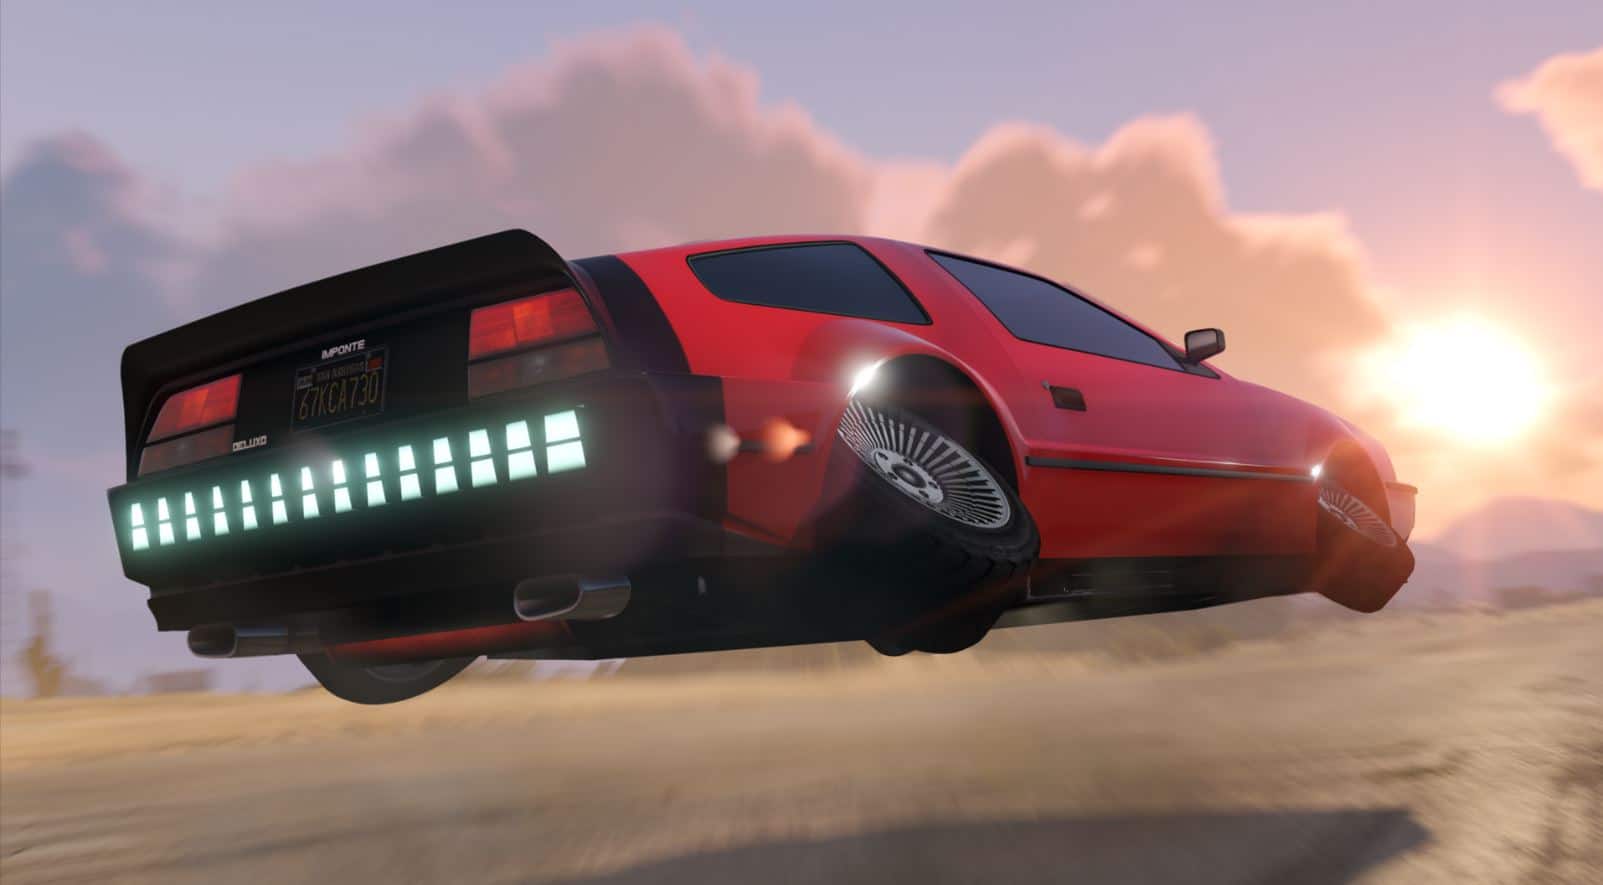 Ya esta disponible las carreras de vehículos especiales en GTA Online -GamersRD